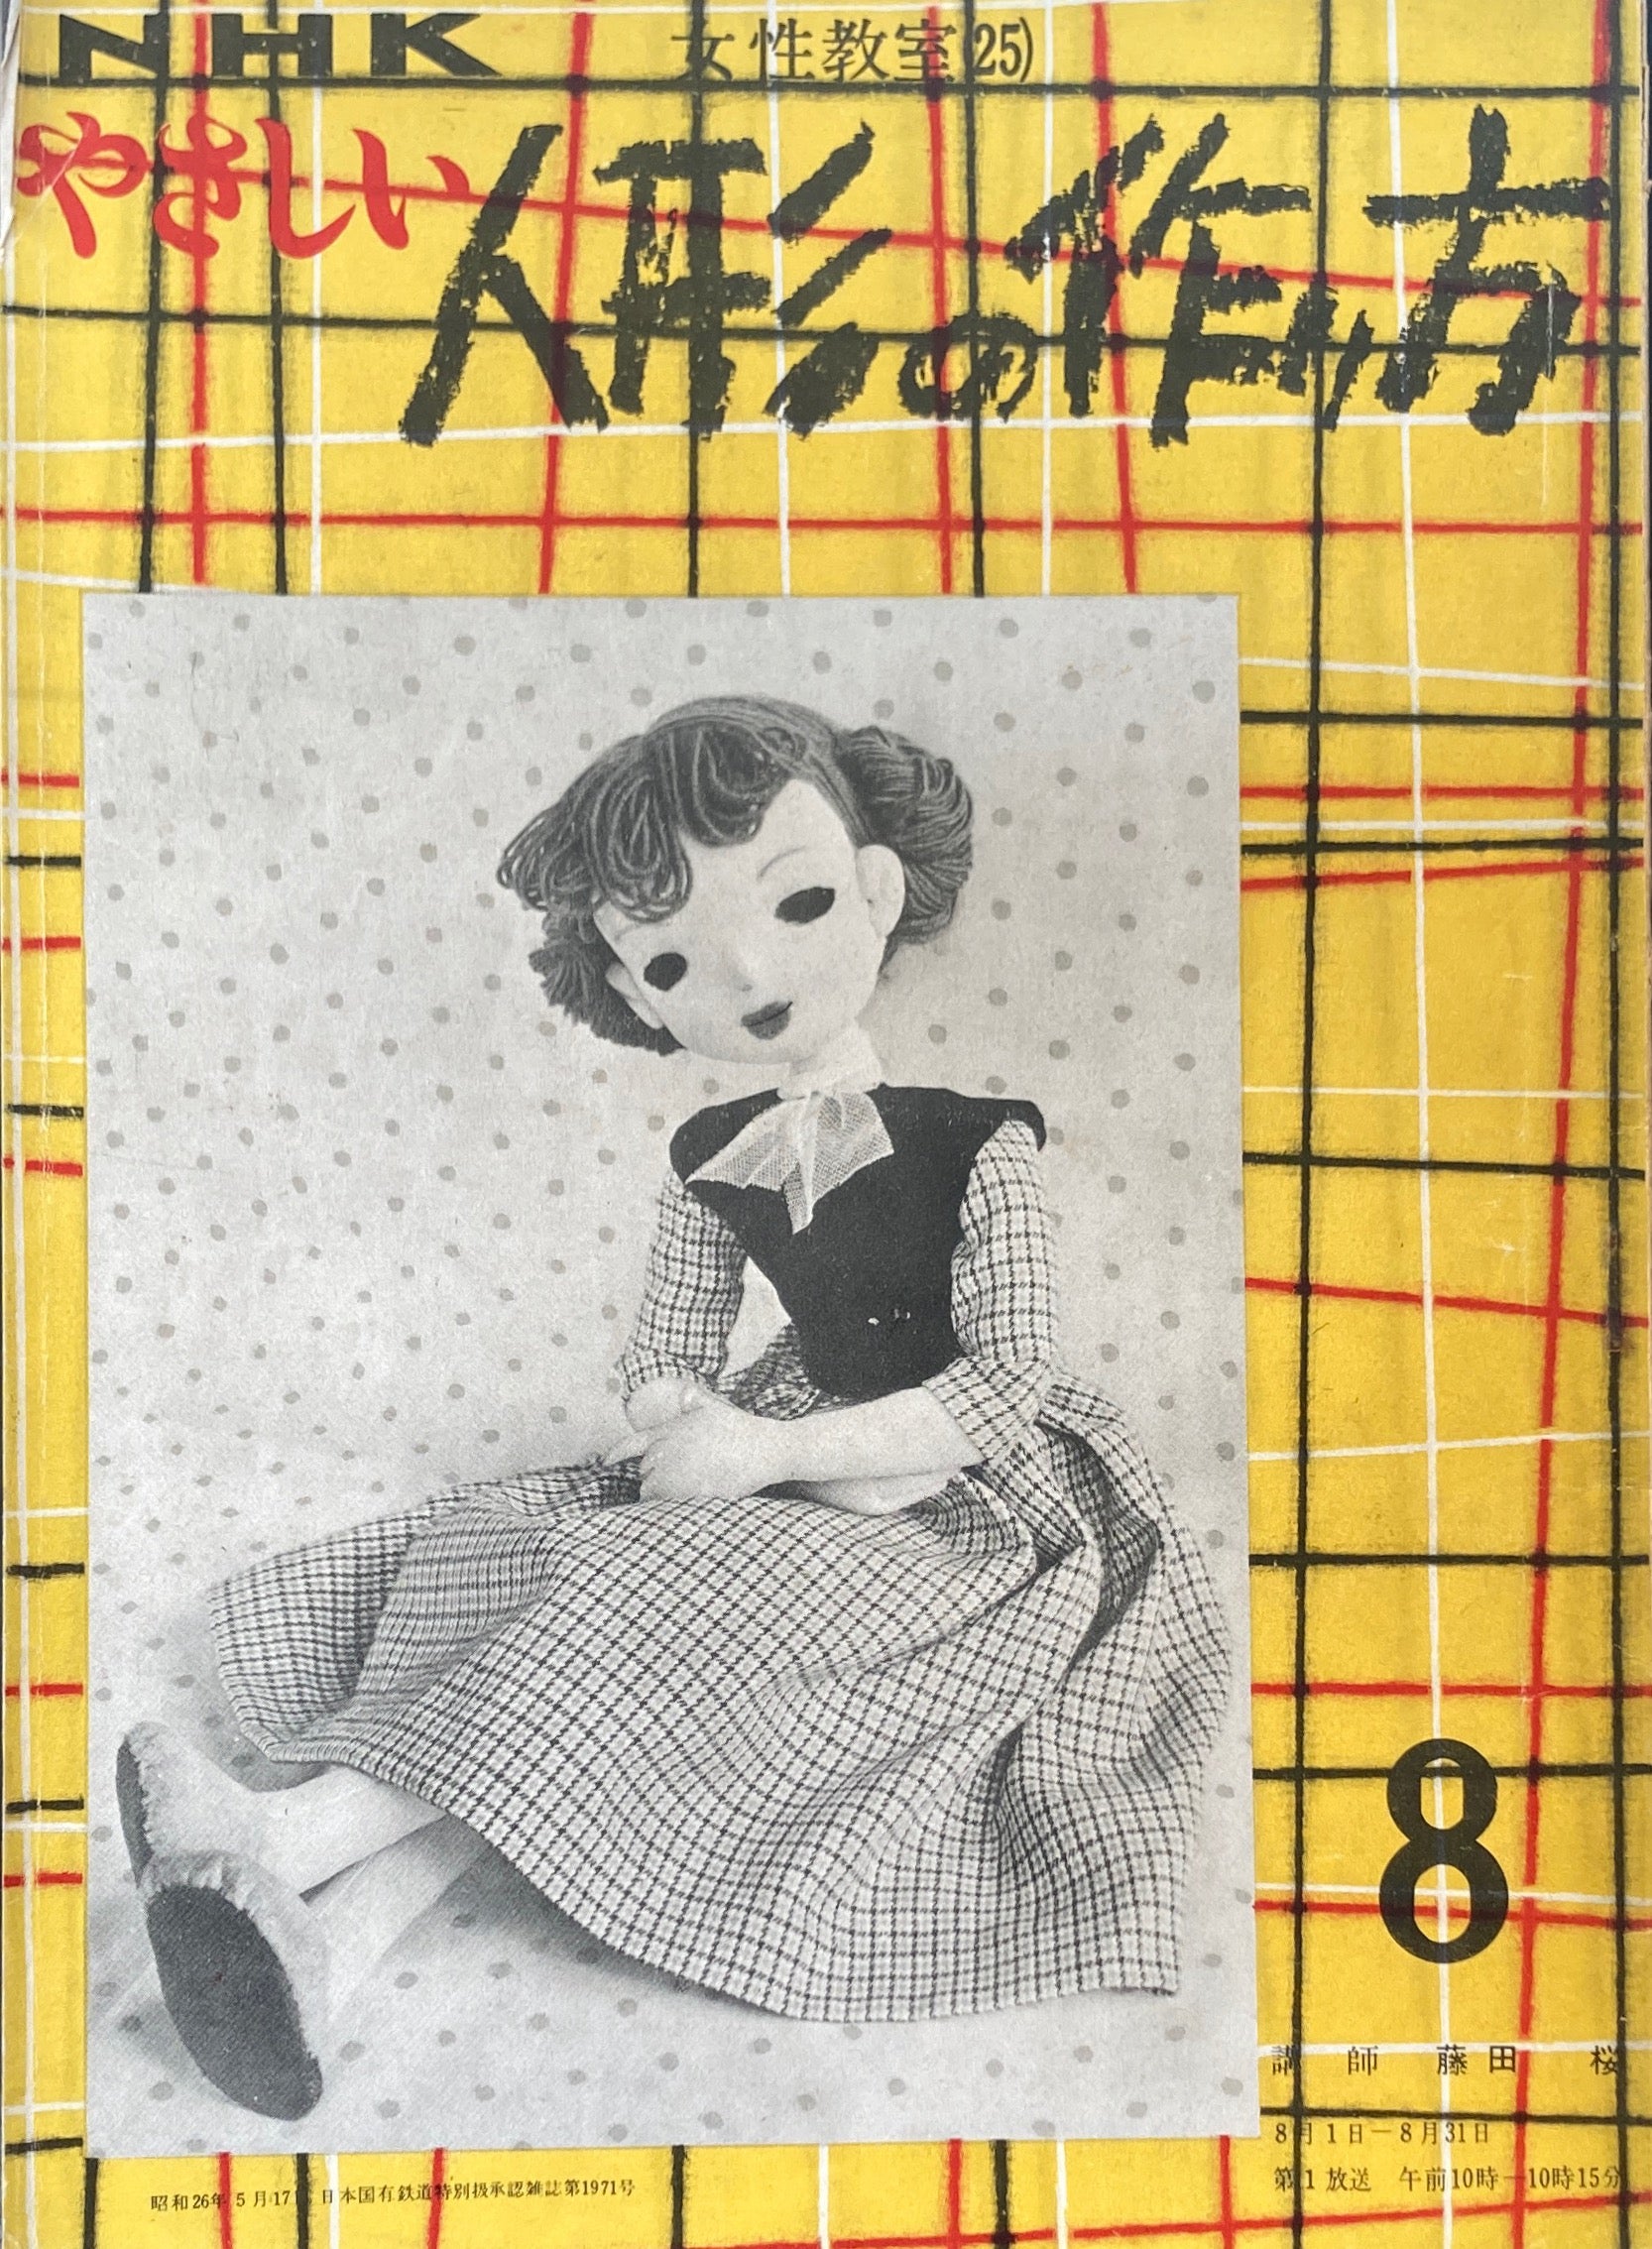 やさしい人形の作り方 NHK女性教室25 昭和26年 – smokebooks shop